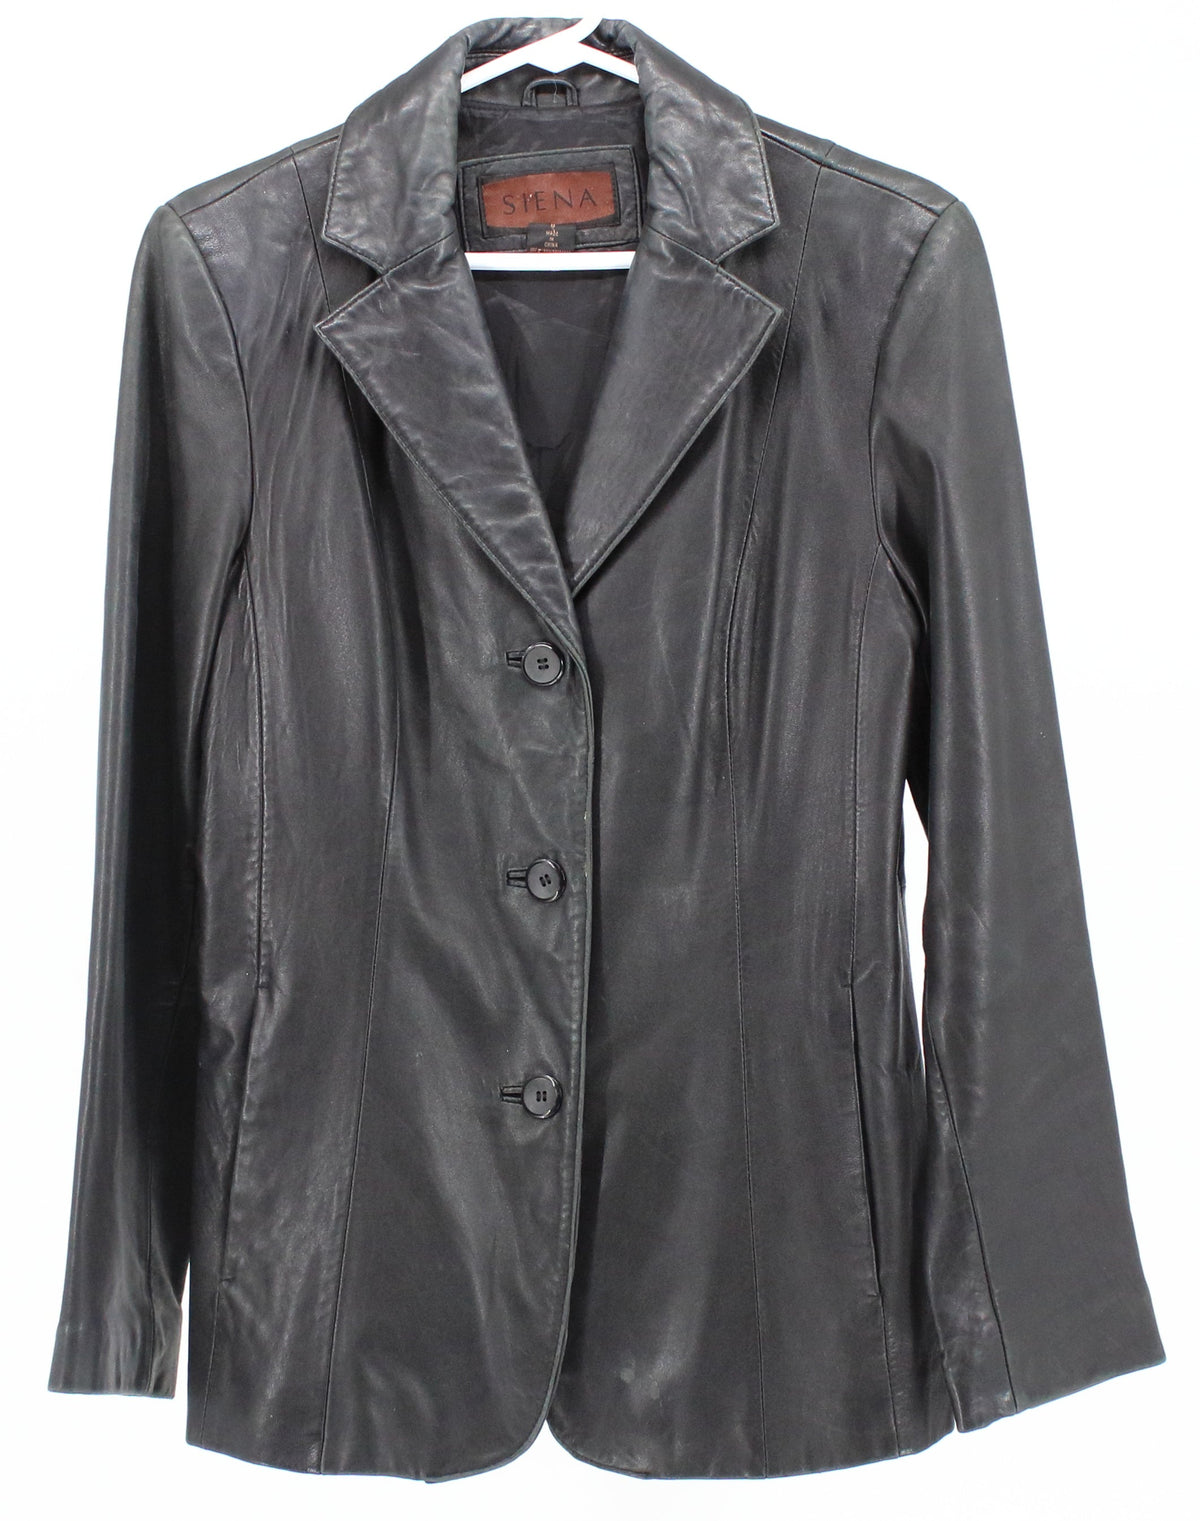 Siena Black Leather Women's Blazer